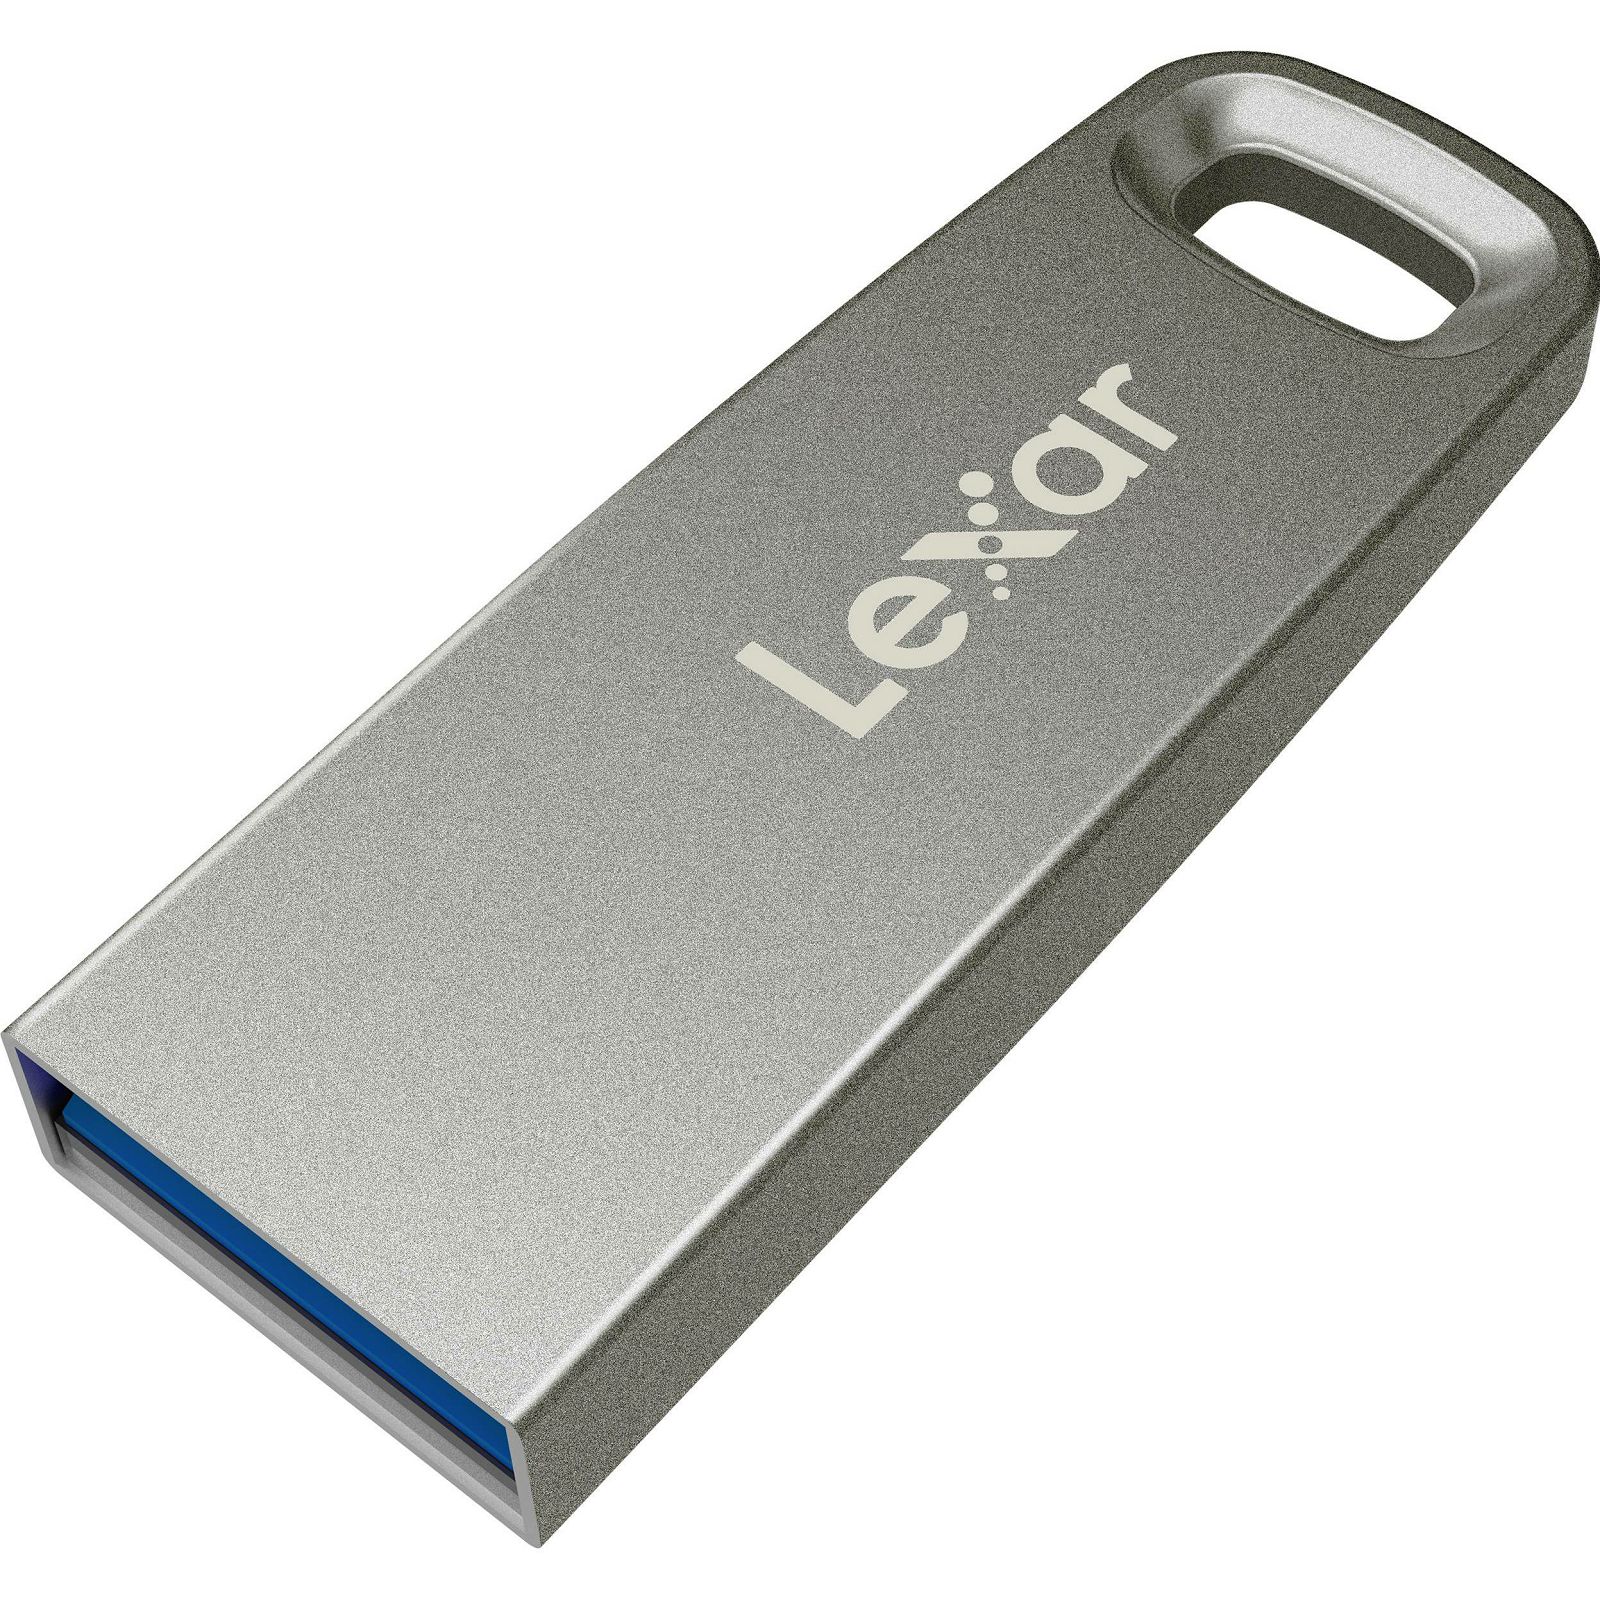 Lexar JumpDrive M45 64GB USB 3.1 Silver Housing 250MB/s memorija (LJDM45-64GABSL)